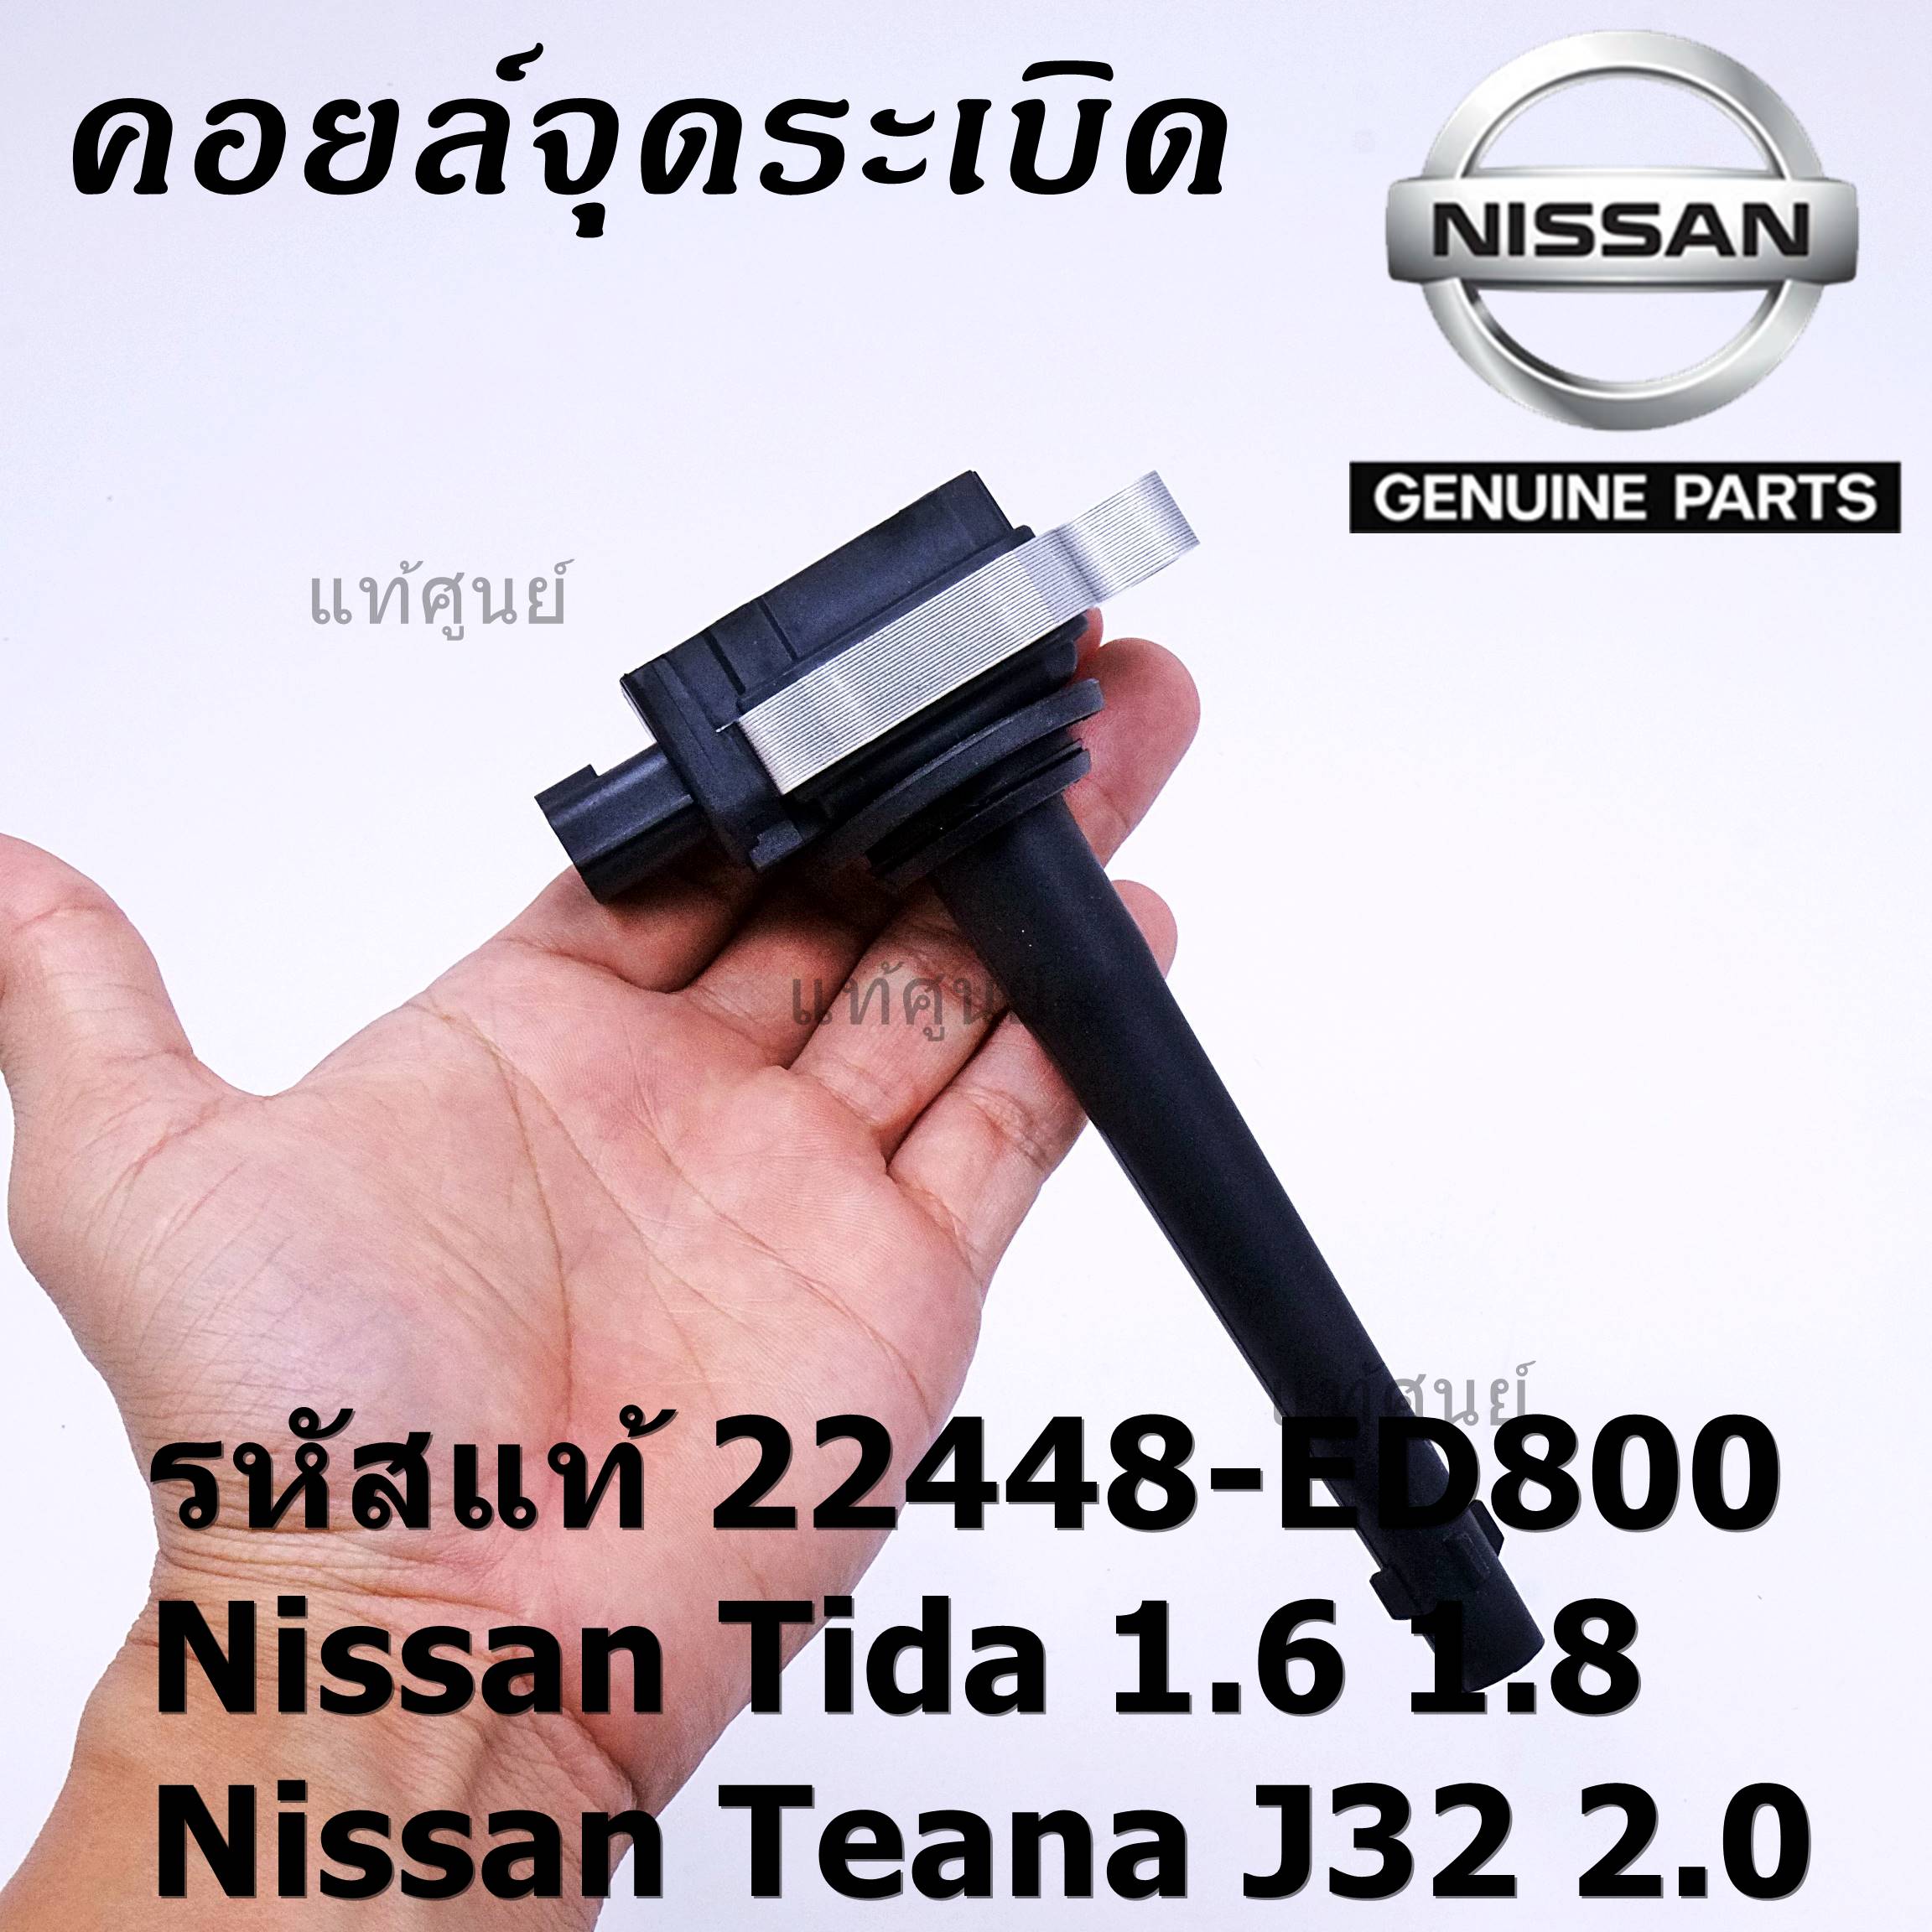 ***ราคาพิเศษ***คอยล์จุดระเบิด รหัสแท้  Nissan: 22448-ED800 Nissan Tida 1.6 1.8 และ Nissan Teana J32 2.0  l MKP Autopart